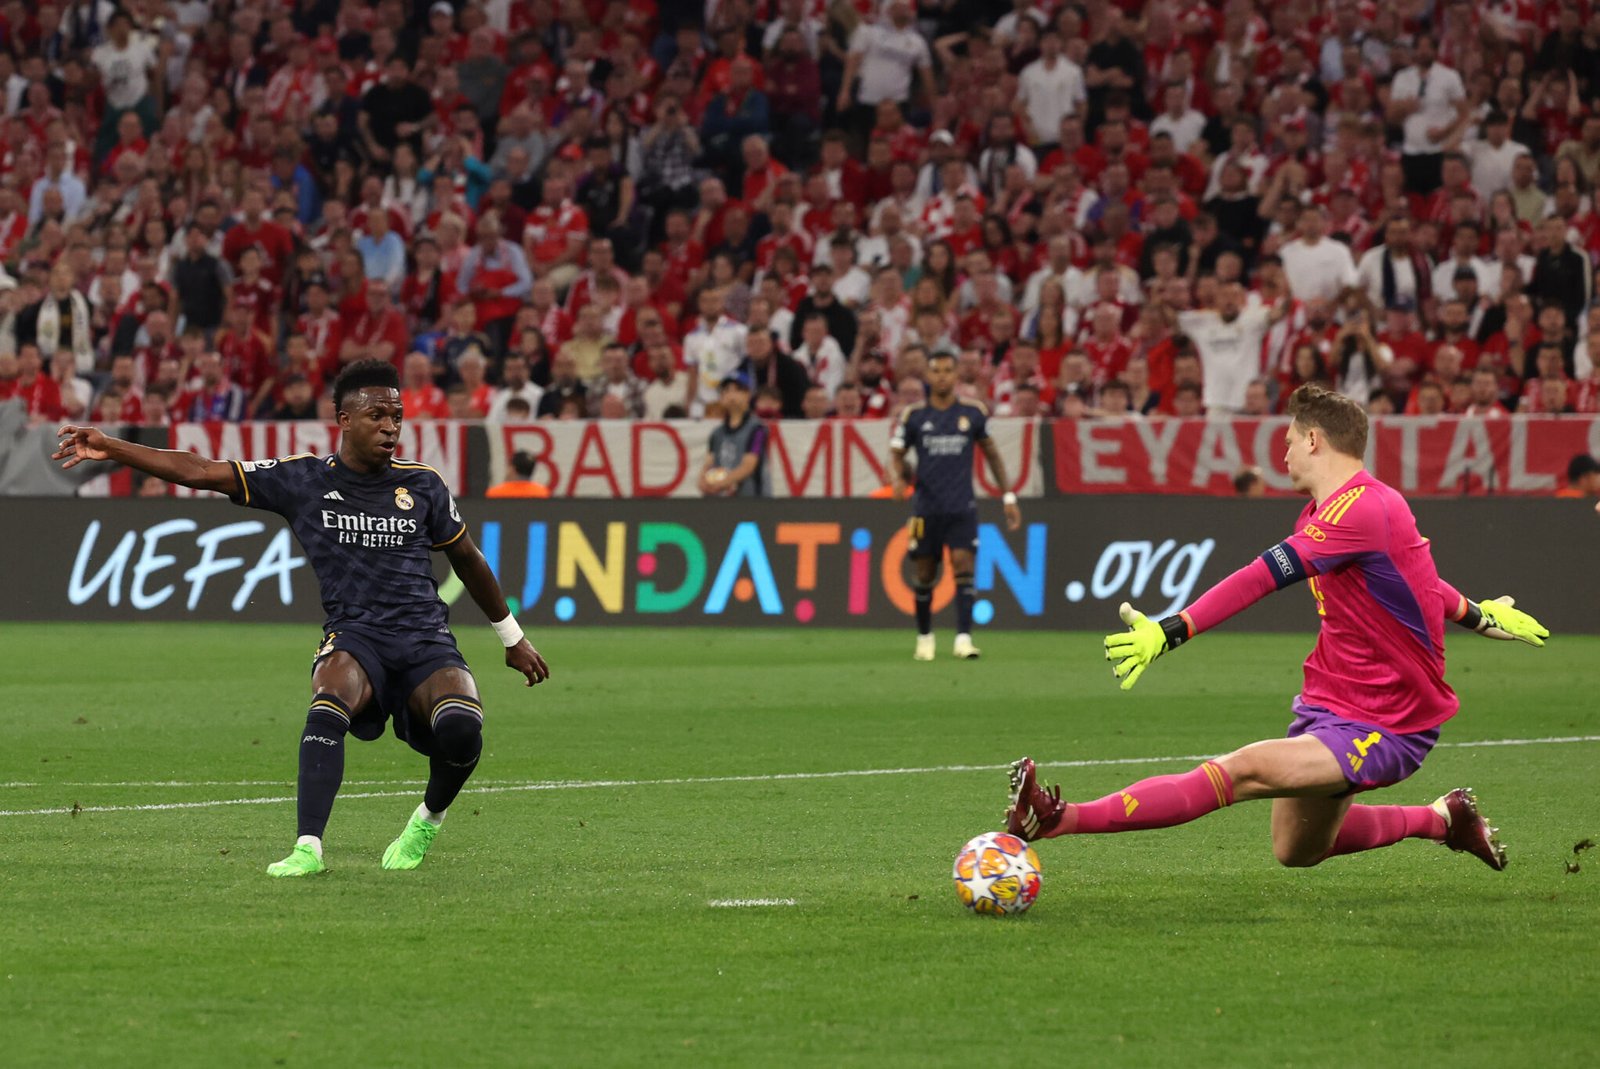 Vinicius anotando el 0-1 frente al Bayern Múnich
Foto: Getty Images